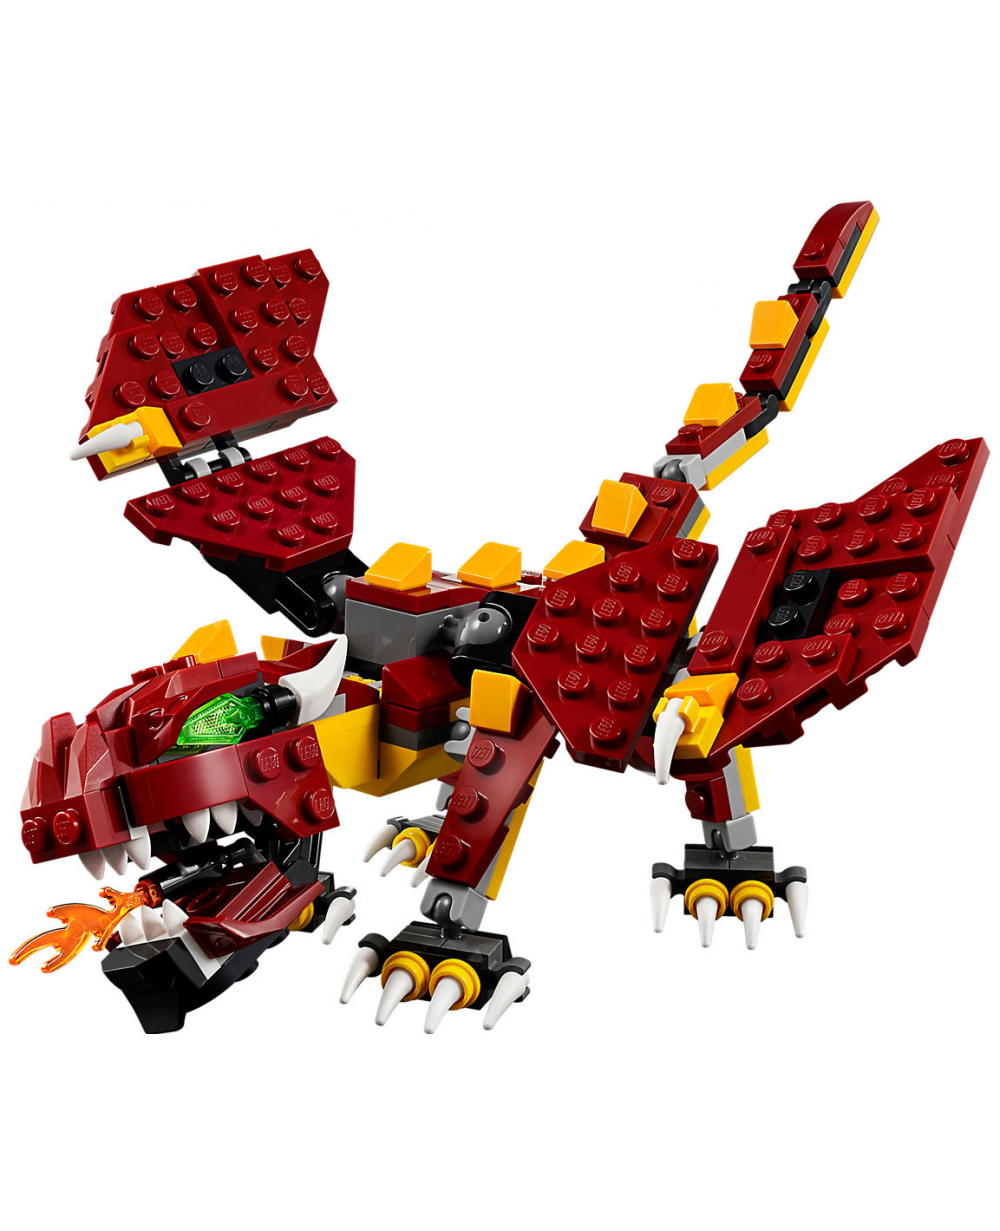 Lego 31073 Creator créatures mythiques Fire Breathing Dragon 1 en 3-Modèle Toy Set